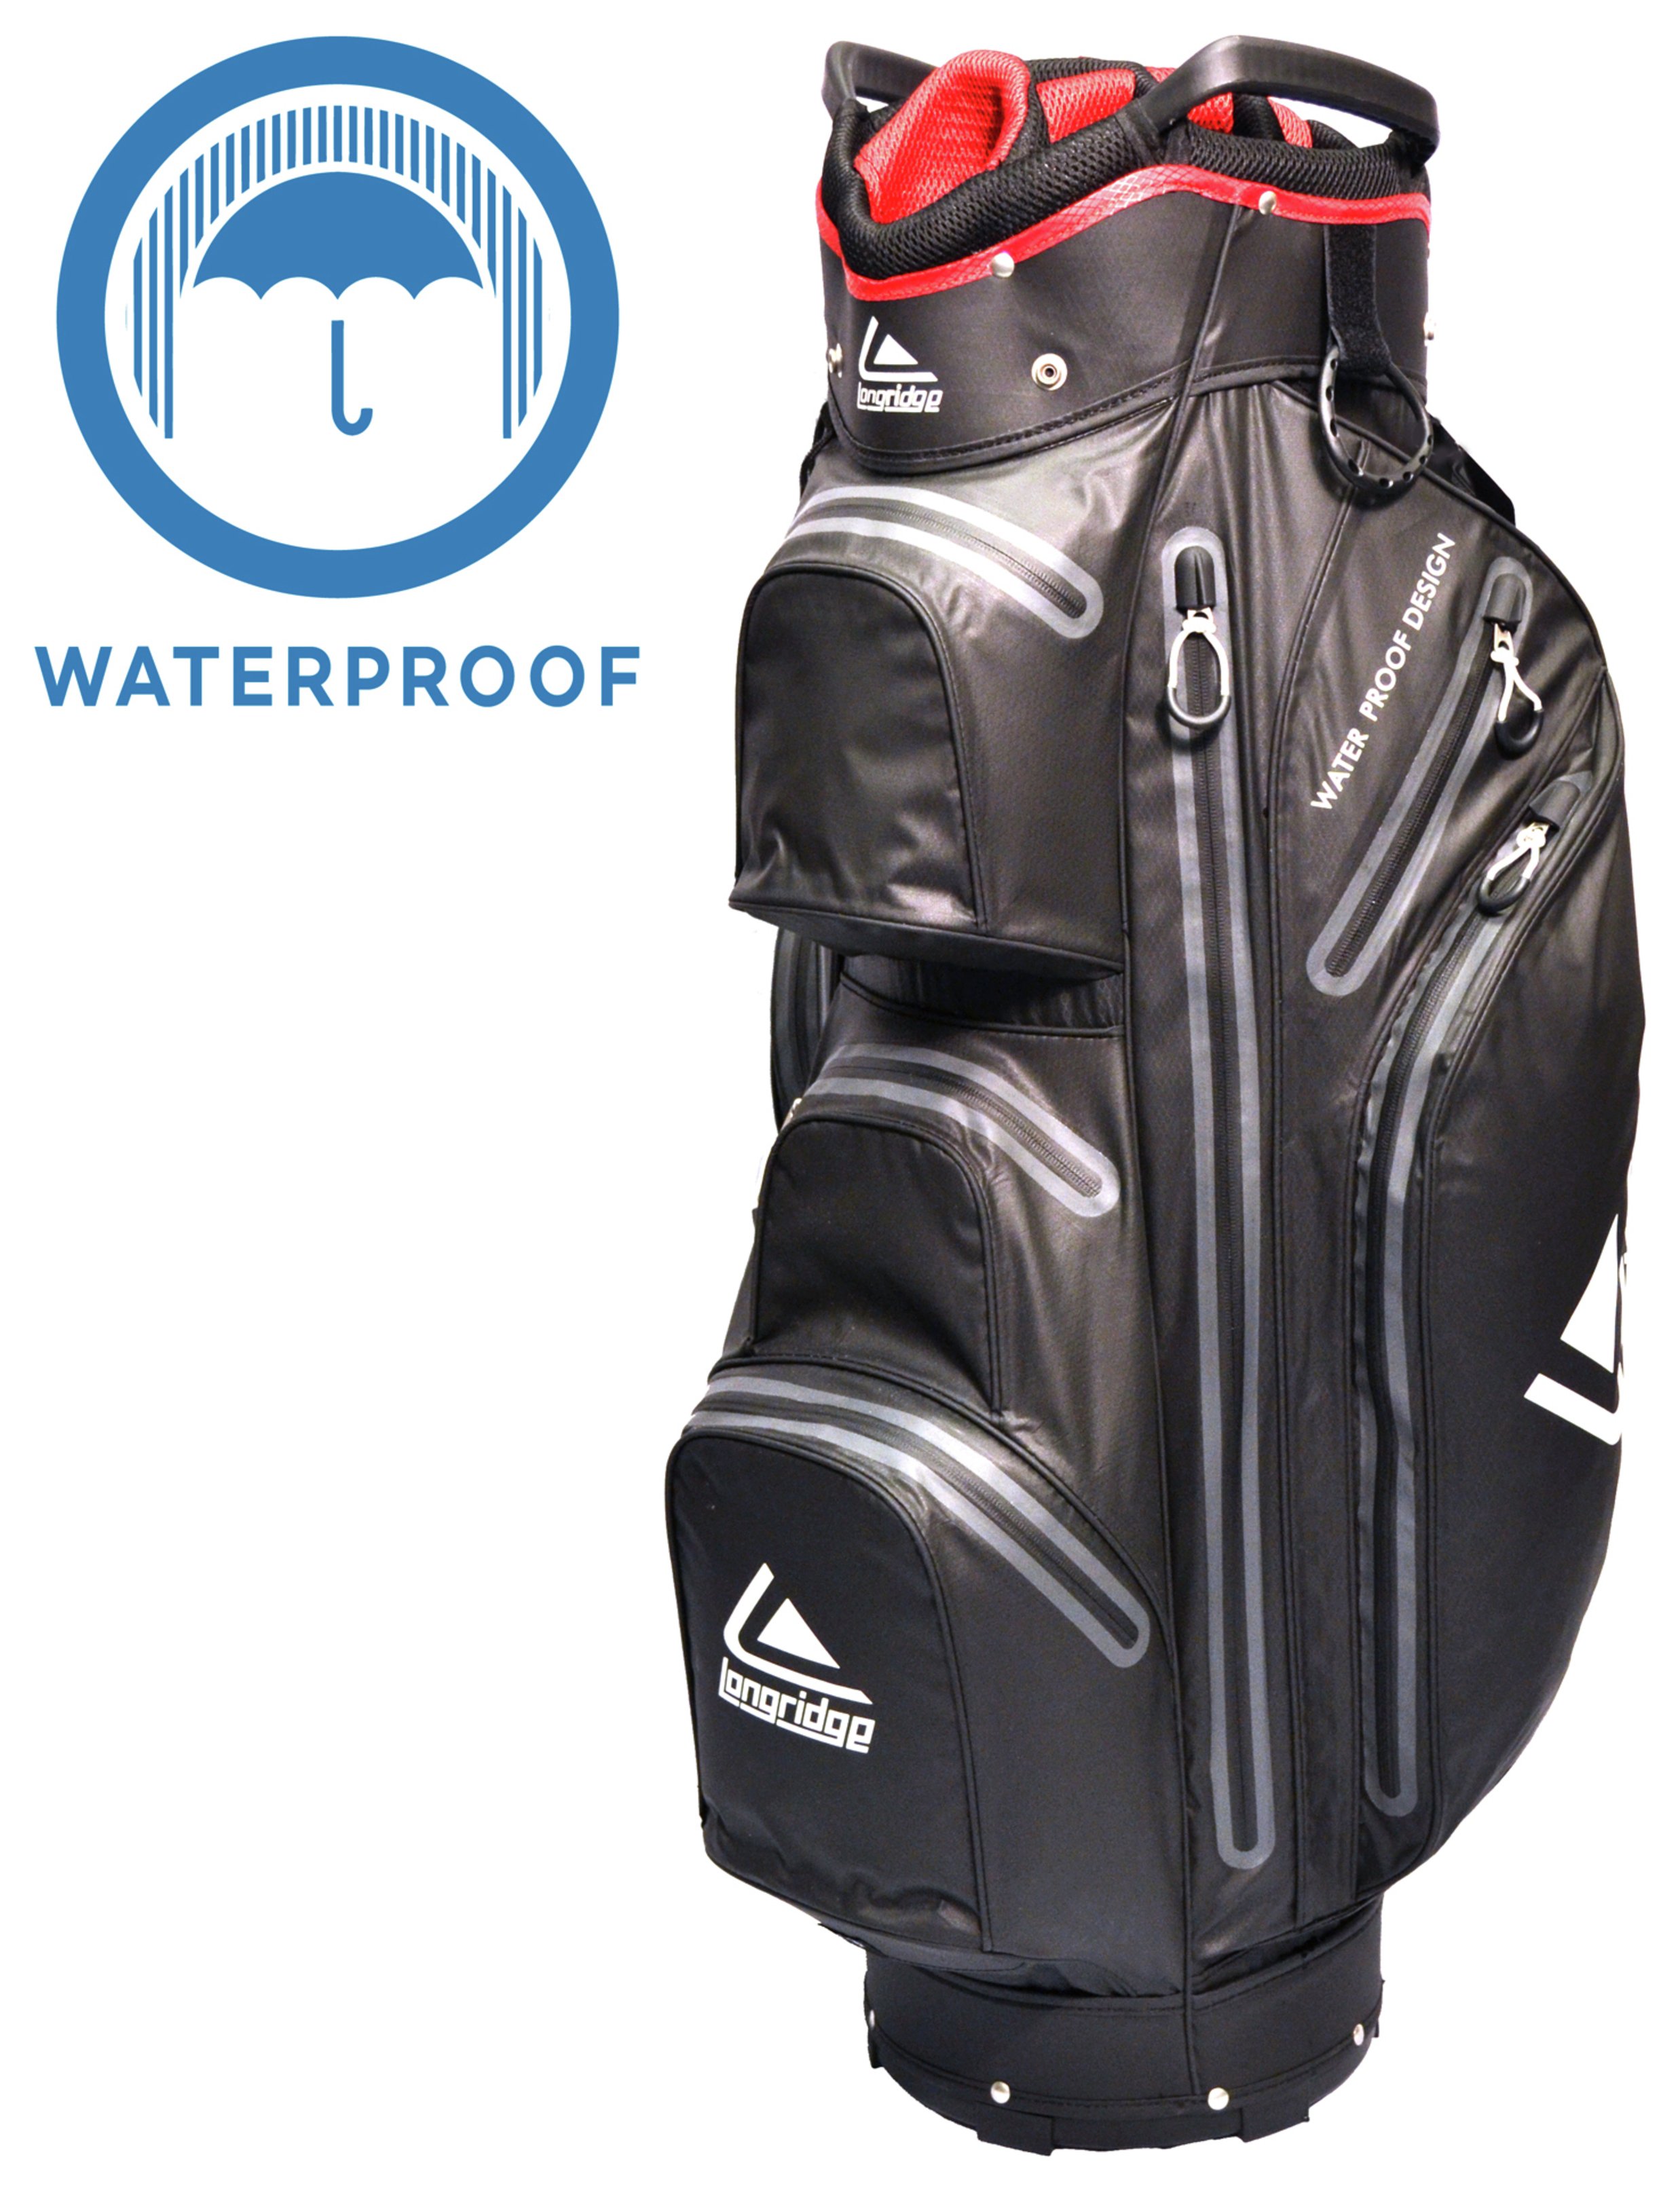 Longridge Aqua Waterproof Cart Bag review